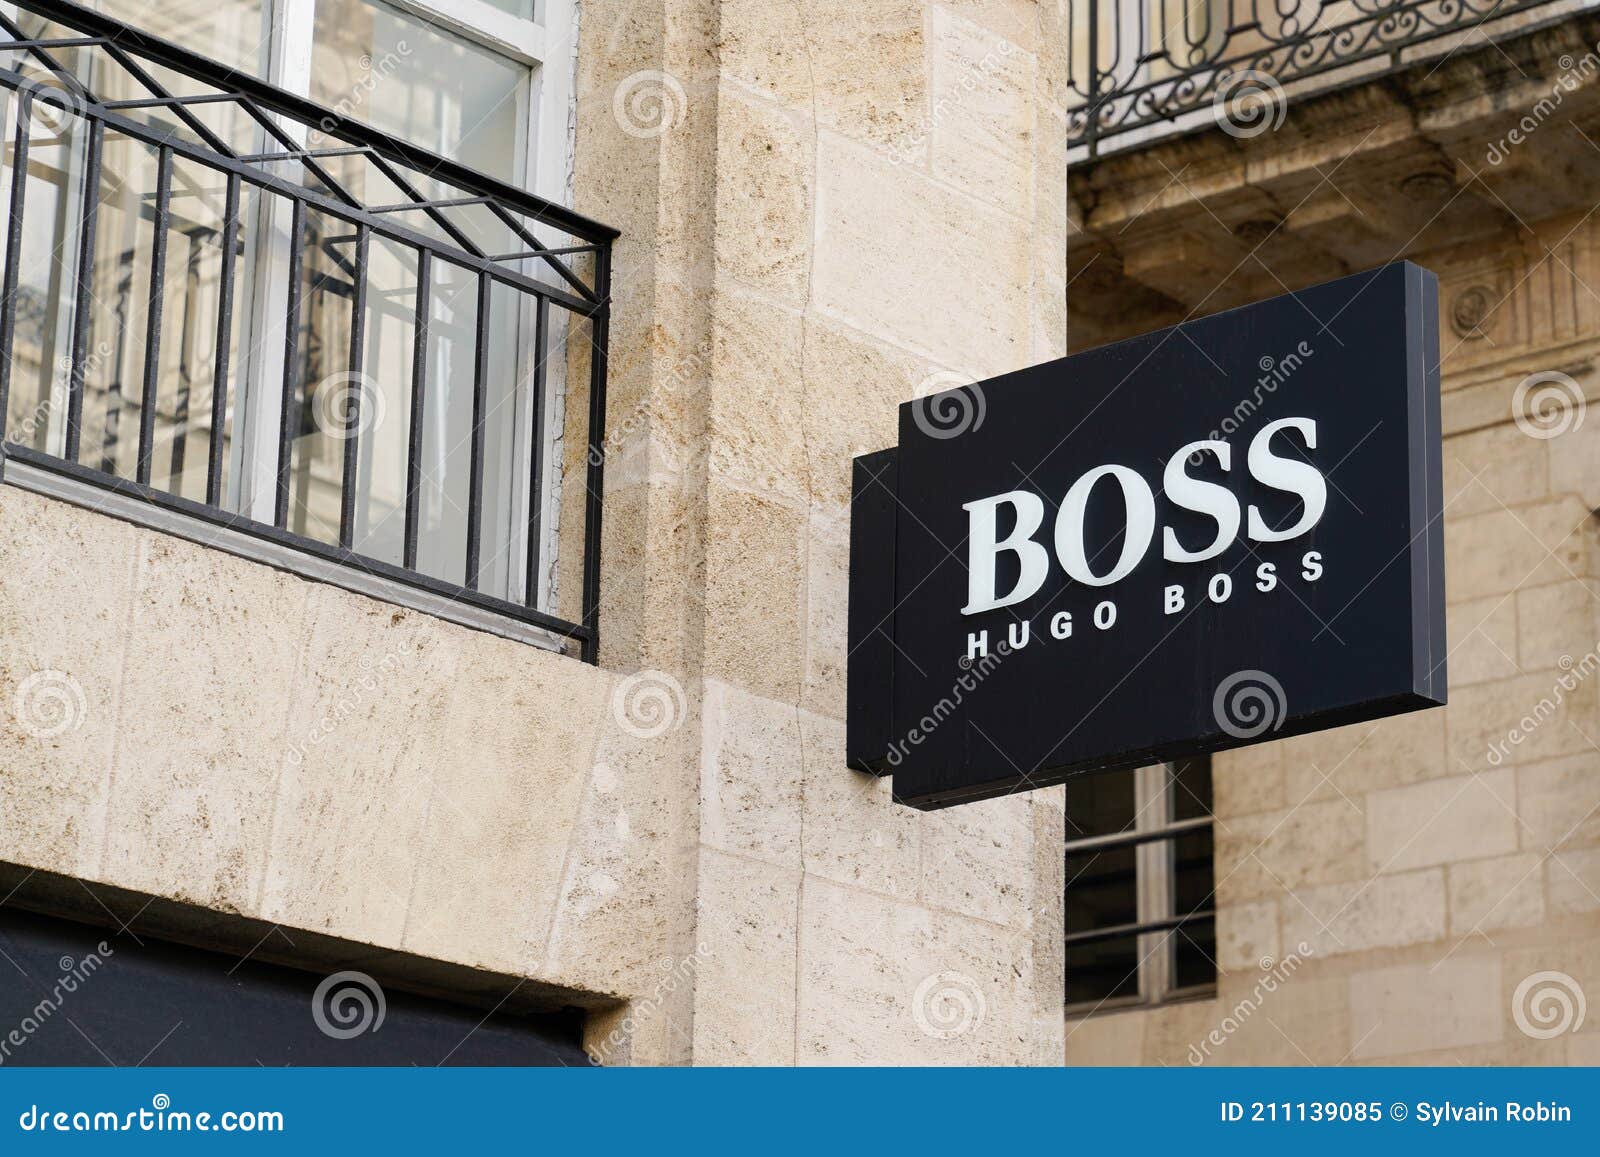 Hugo Boss Marca Signo Y Texto Frente De La Entrada De La Tienda Para La Tienda De De Moda Y Imagen editorial - Imagen de logotipo, ropa: 211139085